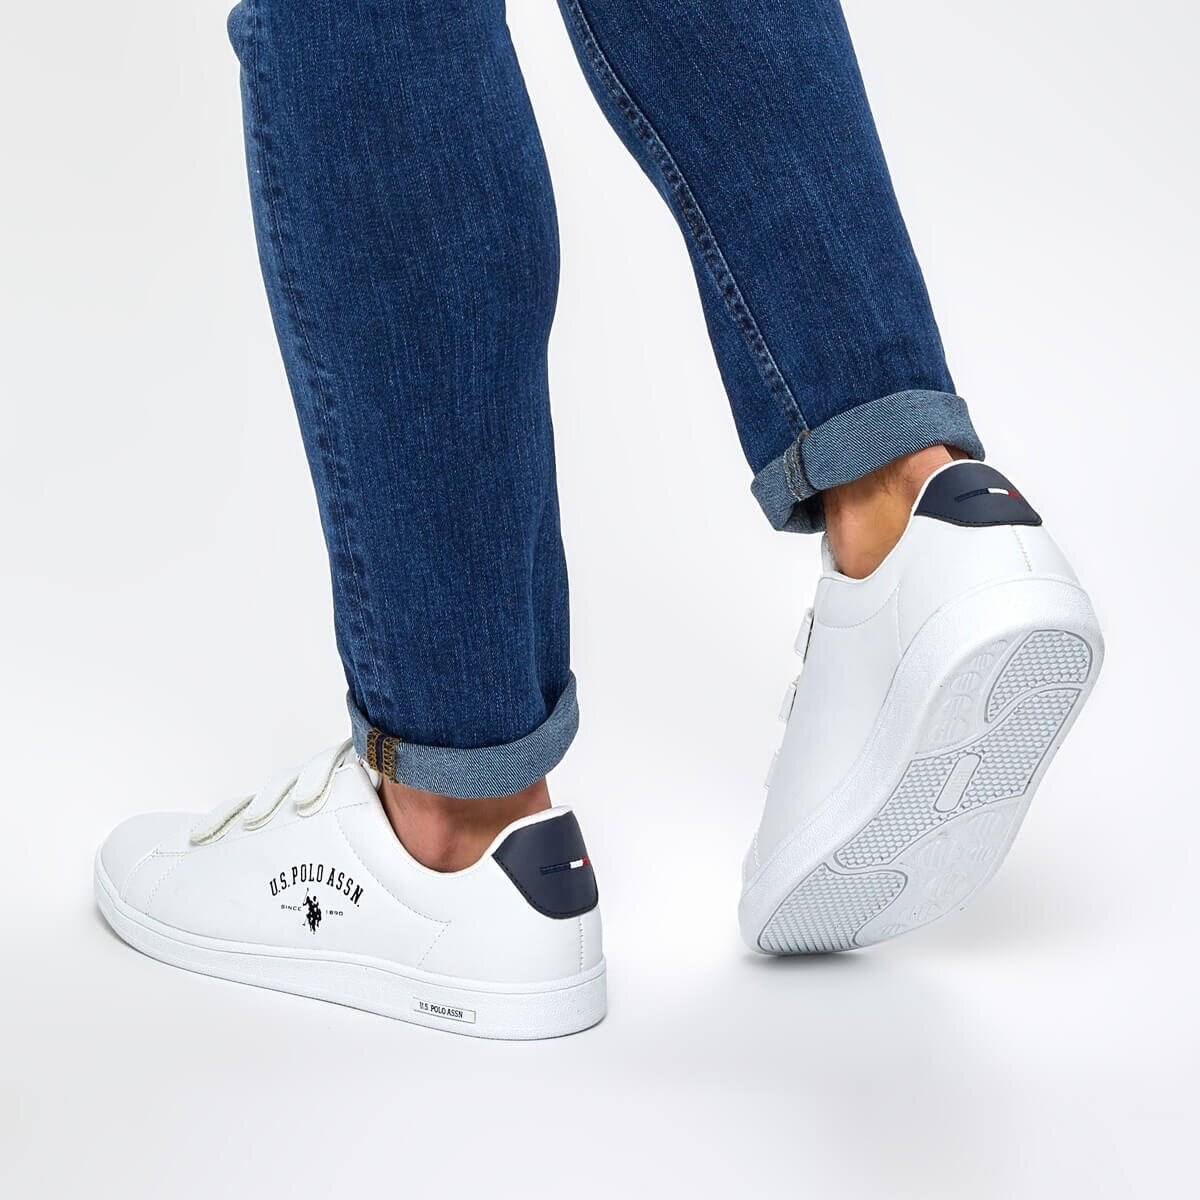 U.S Polo Assn. Singer Erkek Beyaz Cırtlı Sneaker Ayakkabı v1